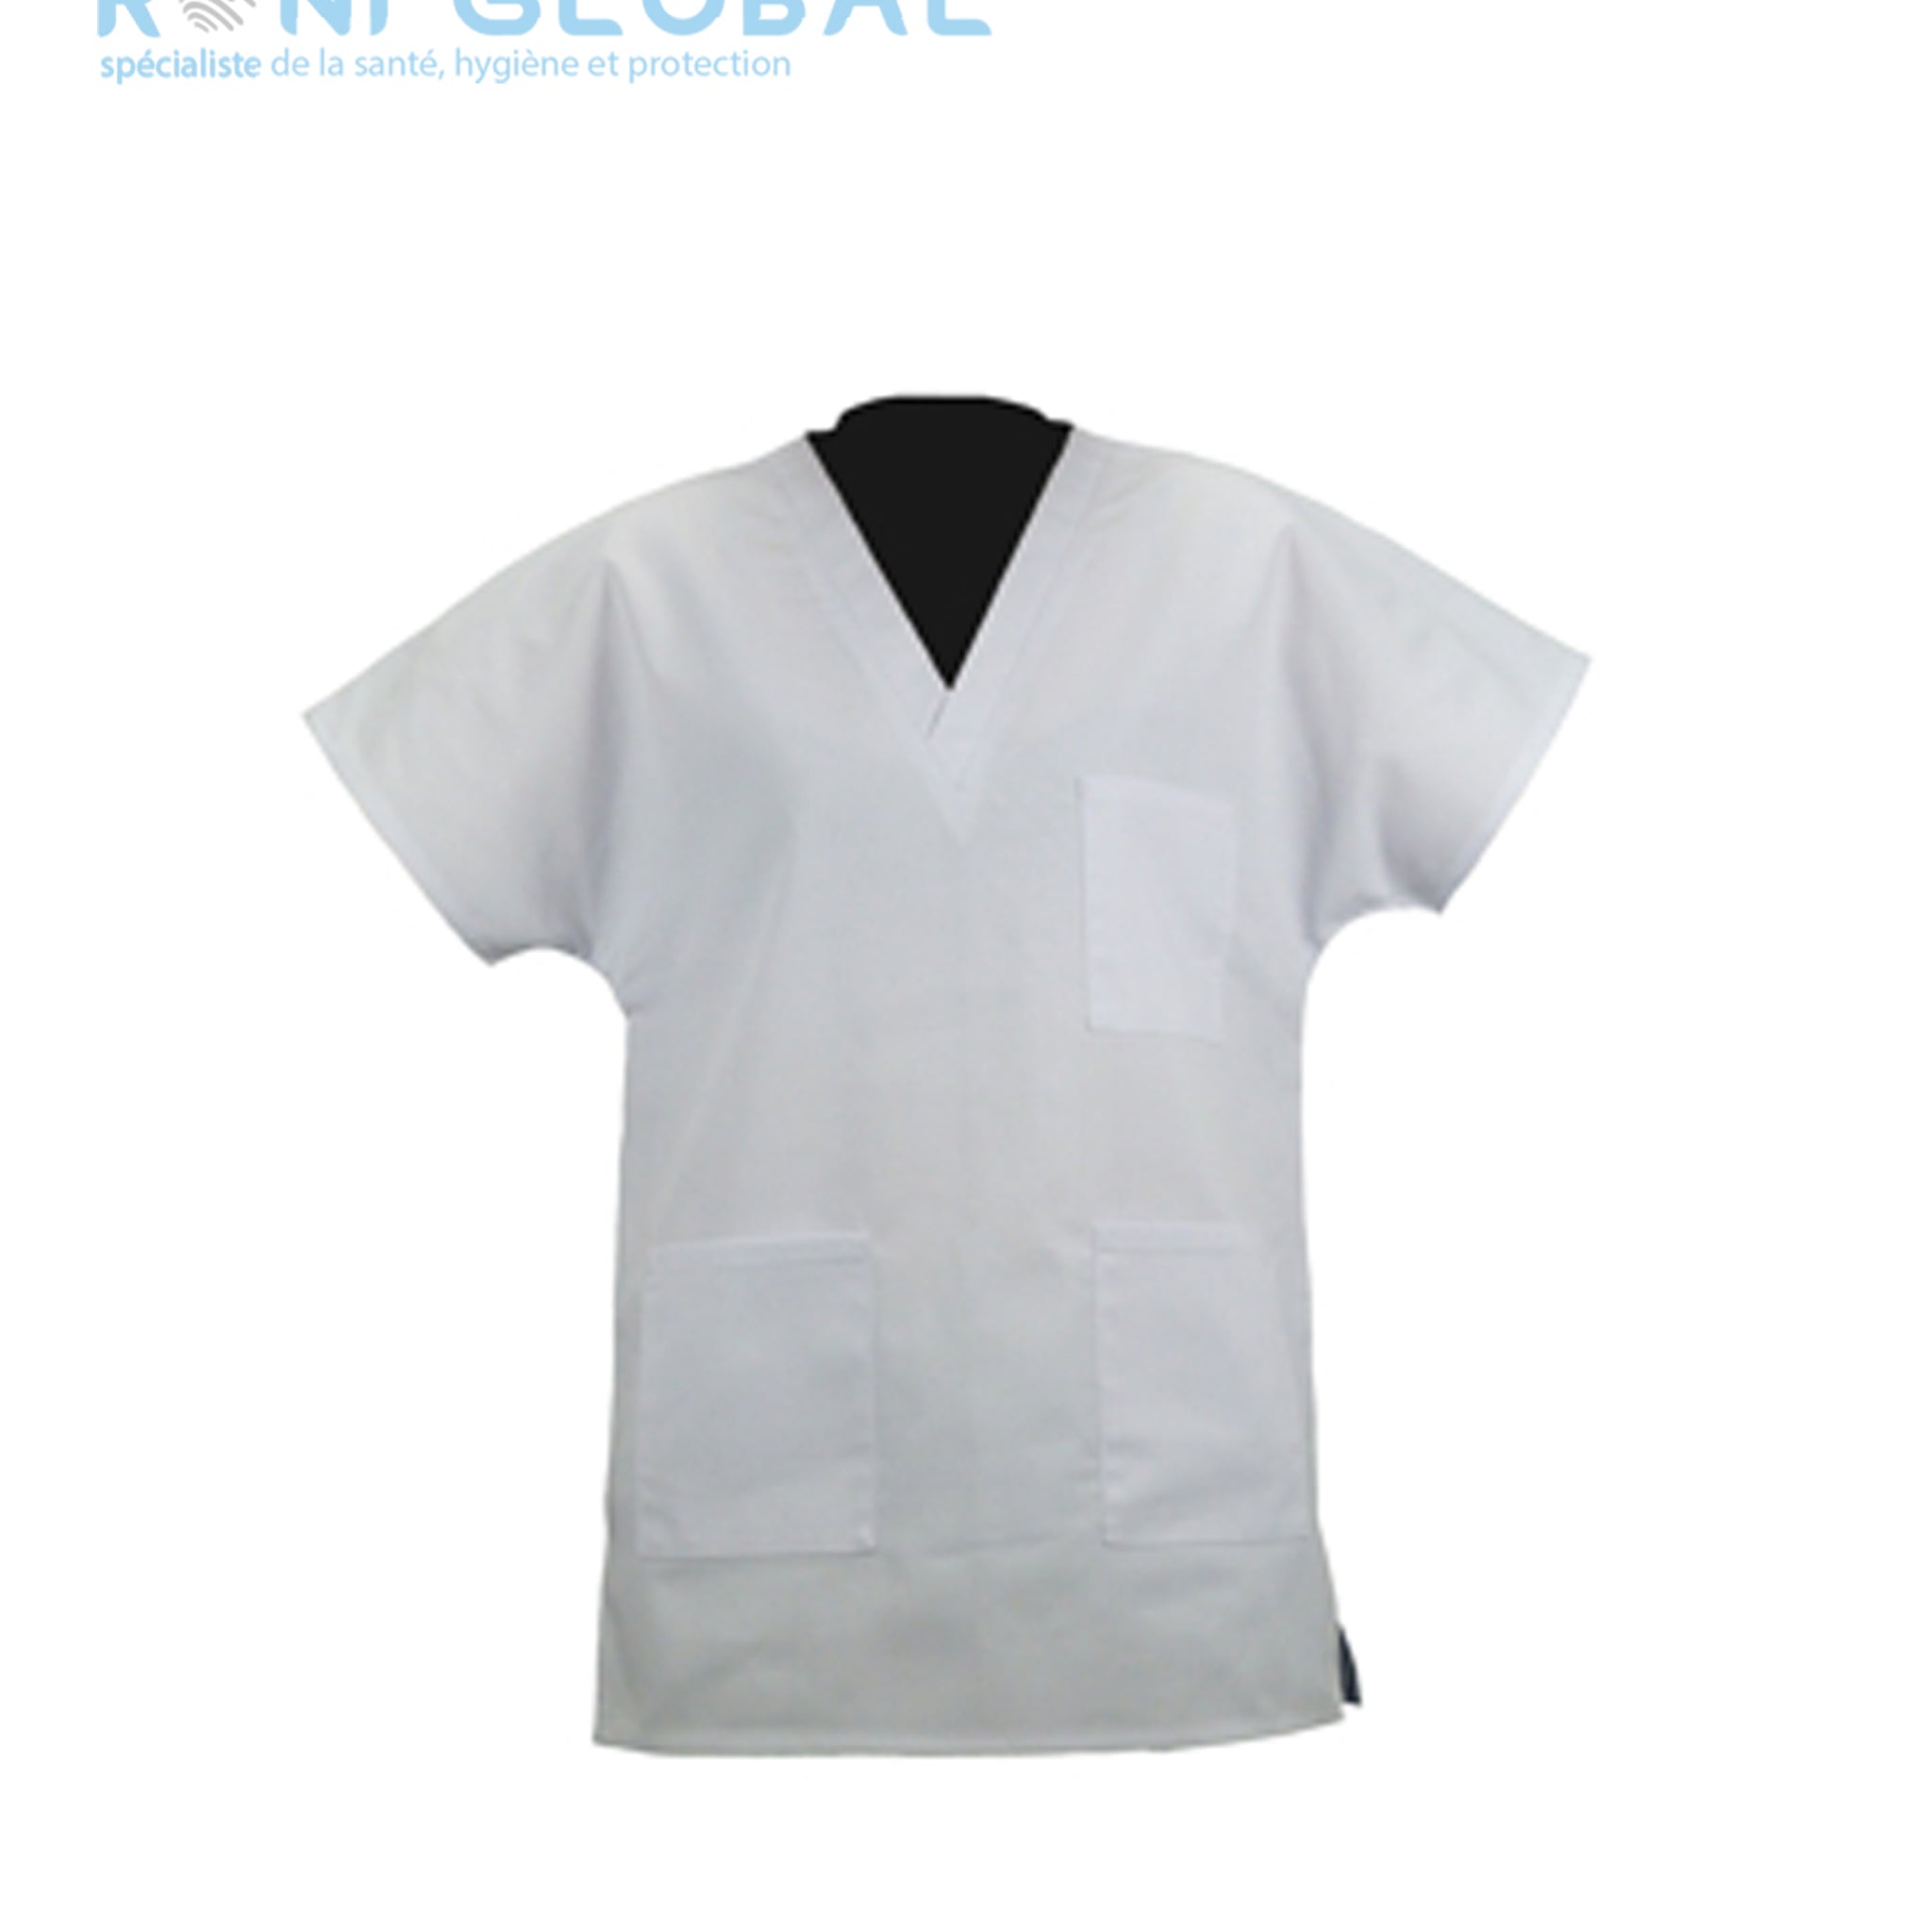 Tunique de travail santé blanche unisexe, manches courtes et col en V, en coton et polyester 3 poches - TUNIQUE A ENFILER P/C 240GR PBV